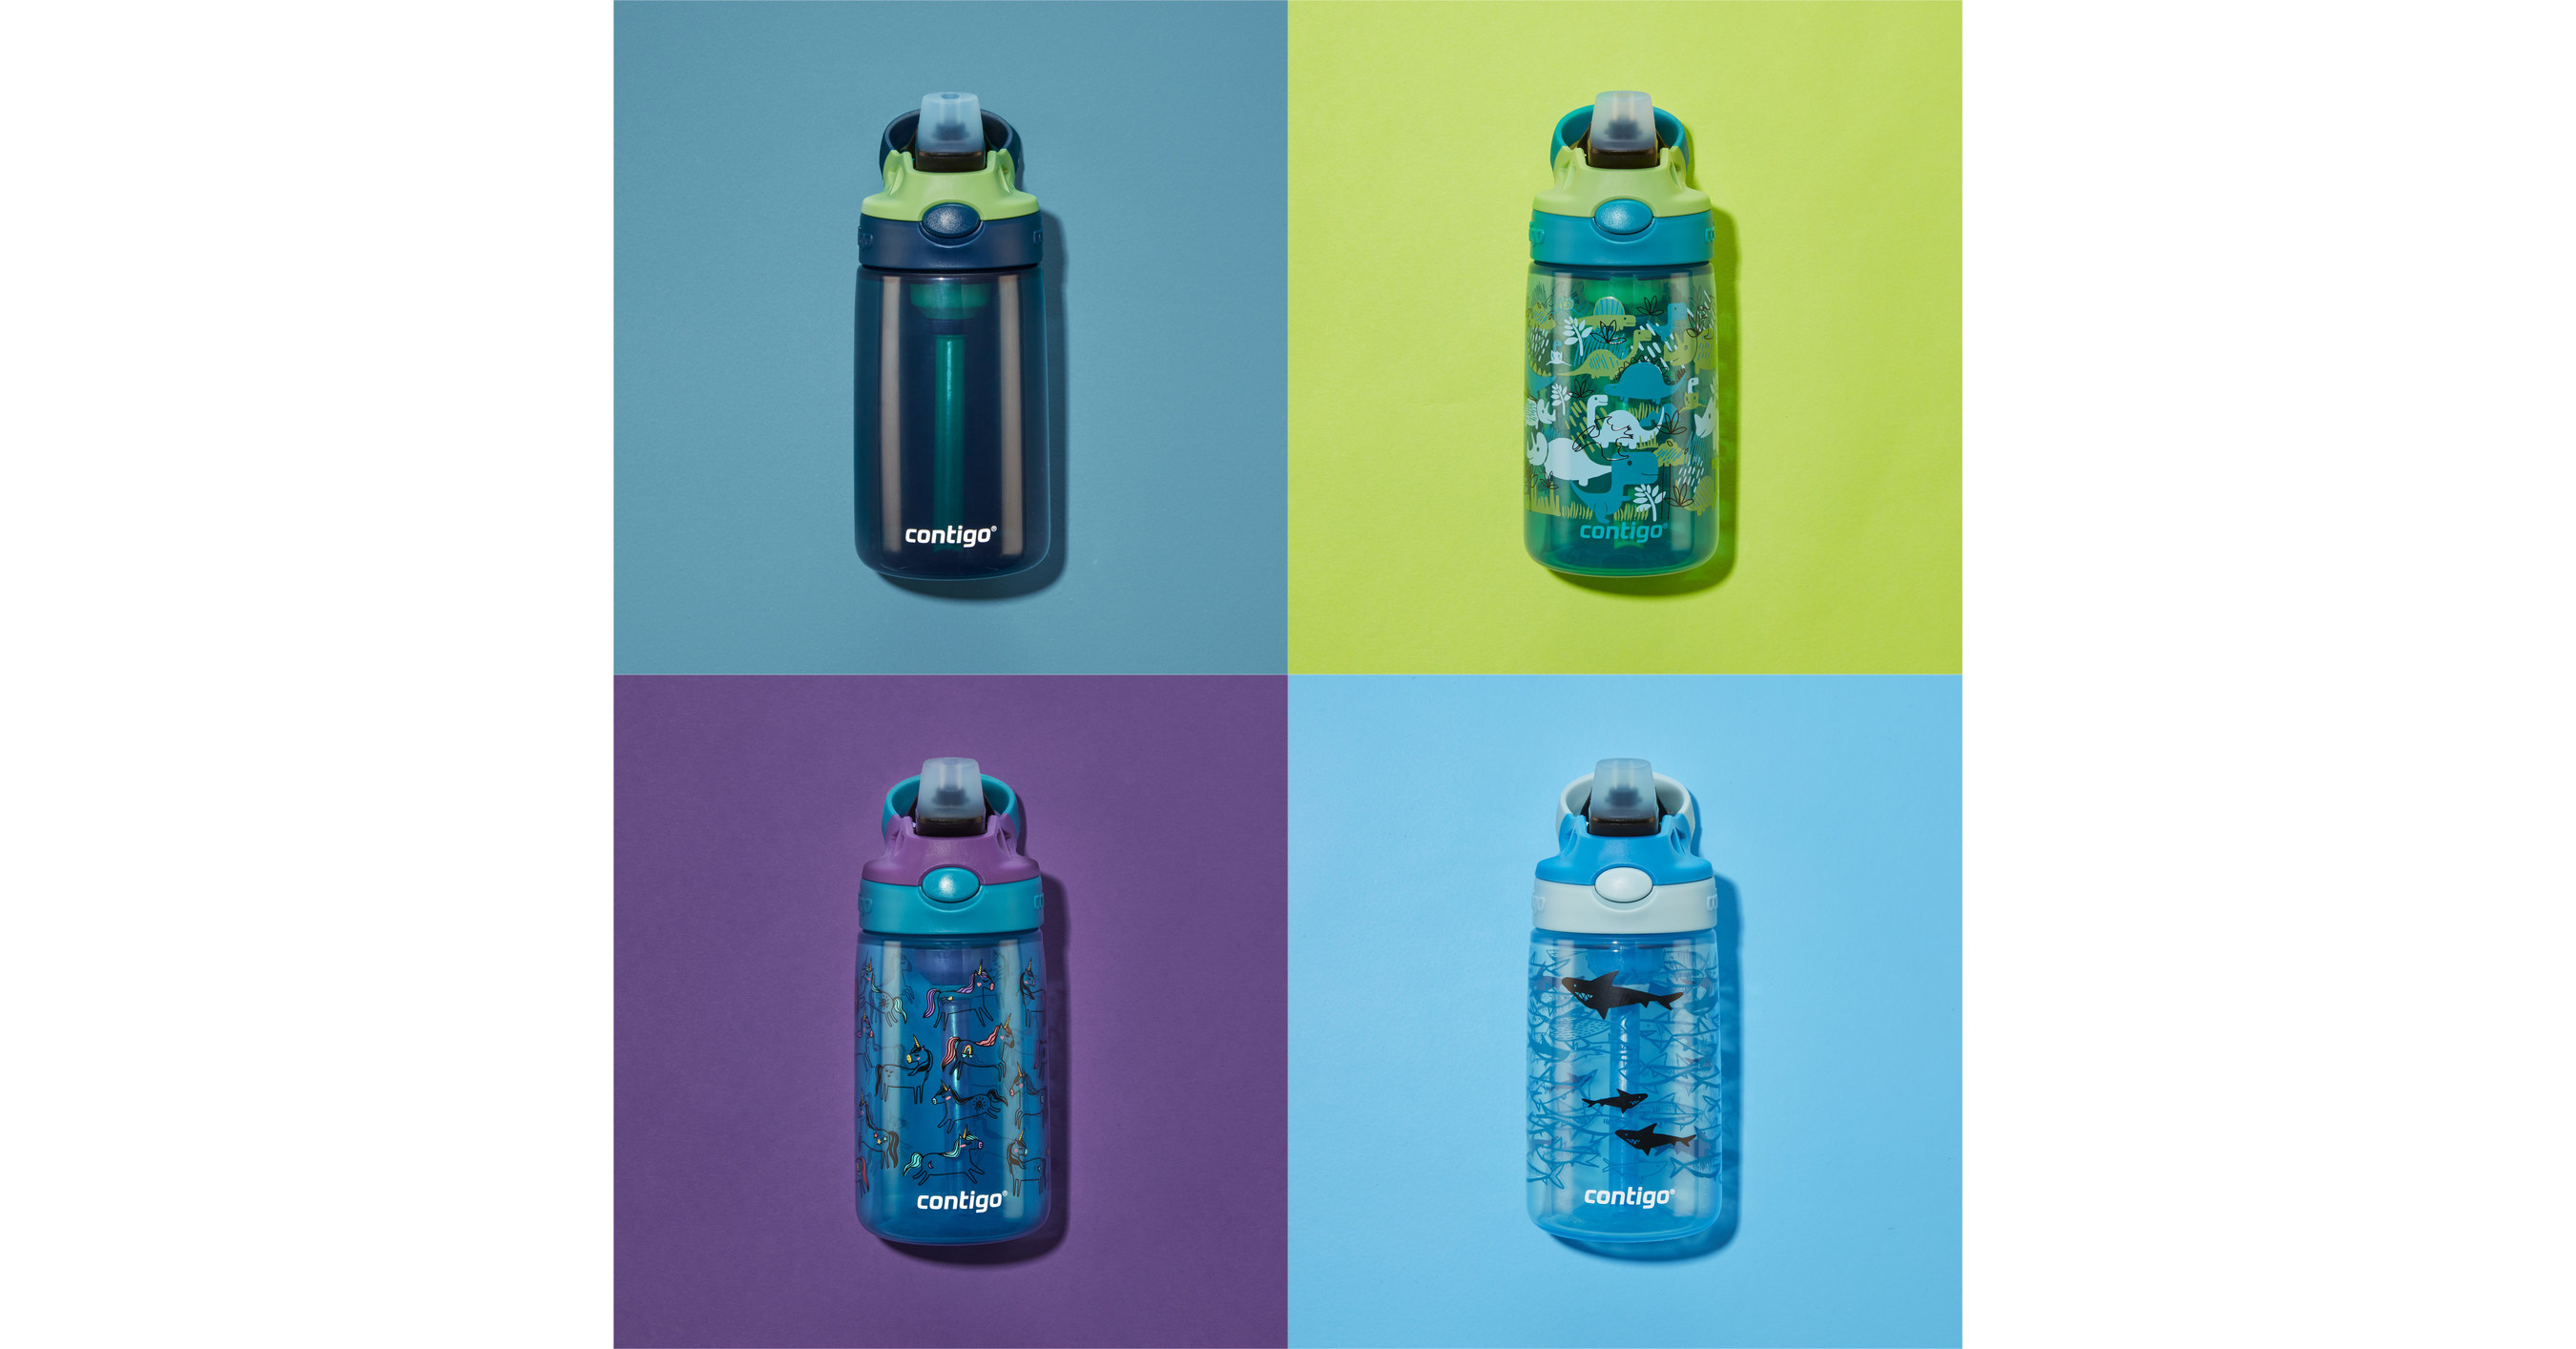 https://mma.prnewswire.com/media/1576744/Contigo_Reusable_Water_Bottle.jpg?p=facebook